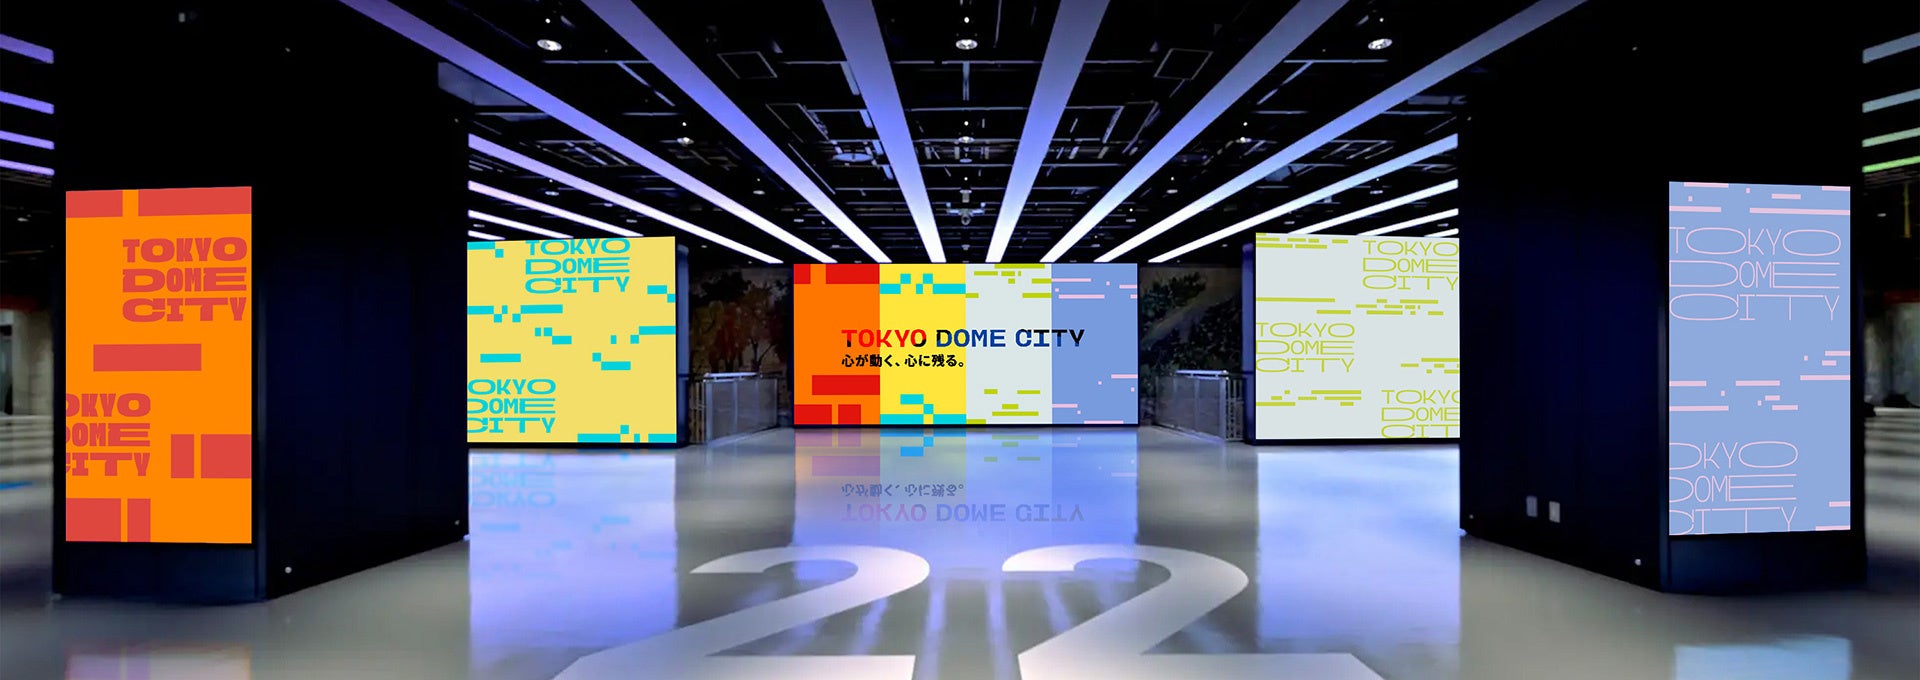 【東京ドームシティ ブランディング活動 続報】東京ドームシティのロゴマーク・大型ビジョン展開が国内外のデ...